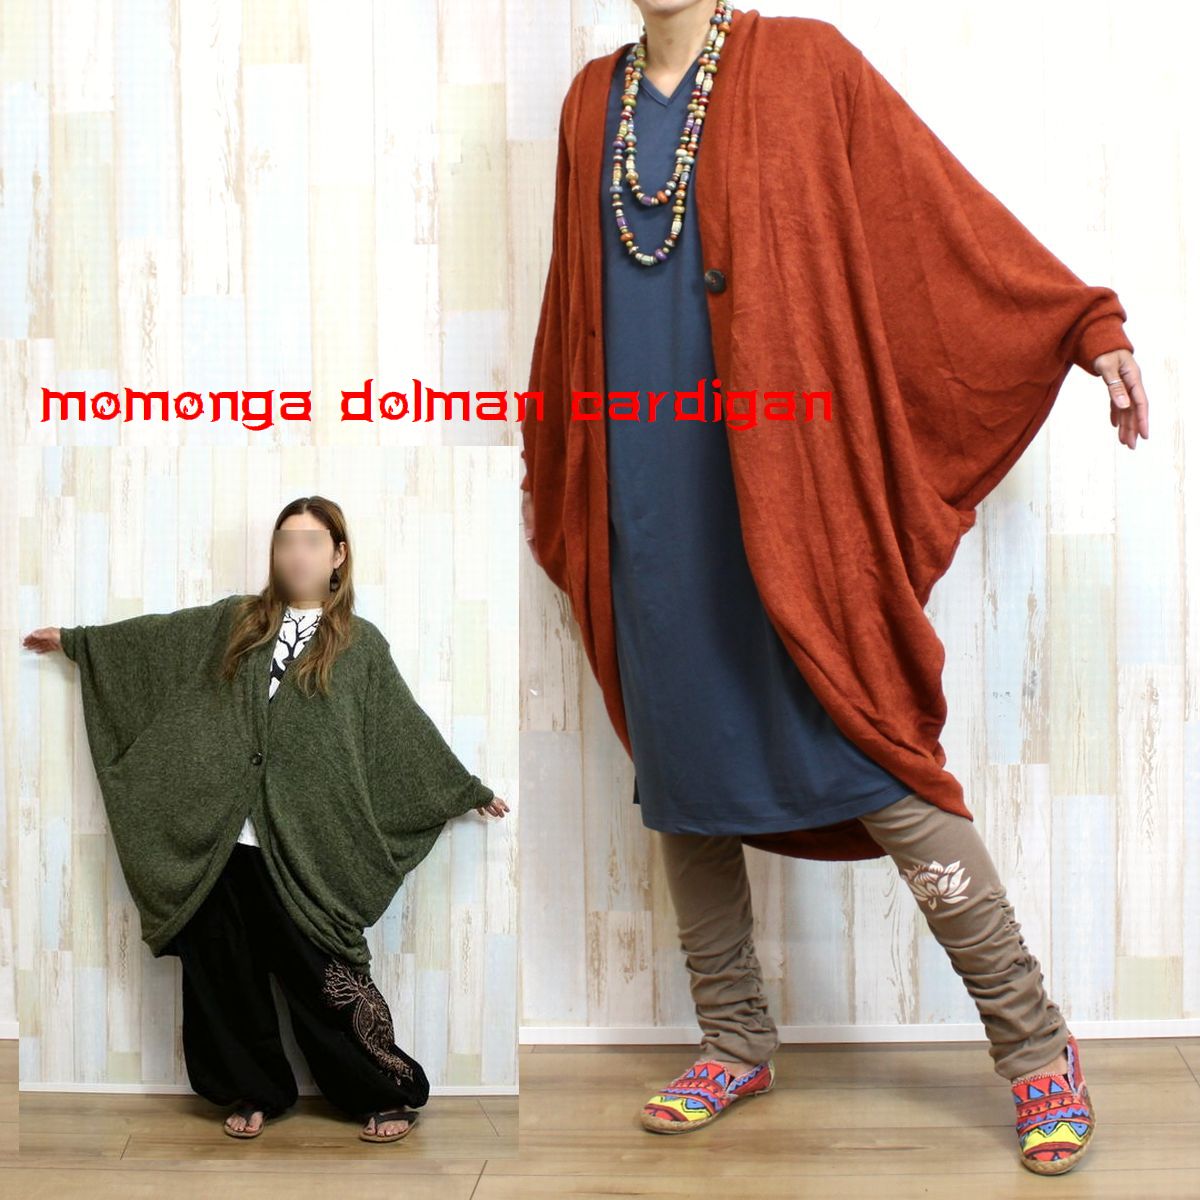 モモンガ ドルマンスリーブ ニット カーディガン 全4色/ジャケット/ アジアン エスニック 男女兼用 メンズ レディース